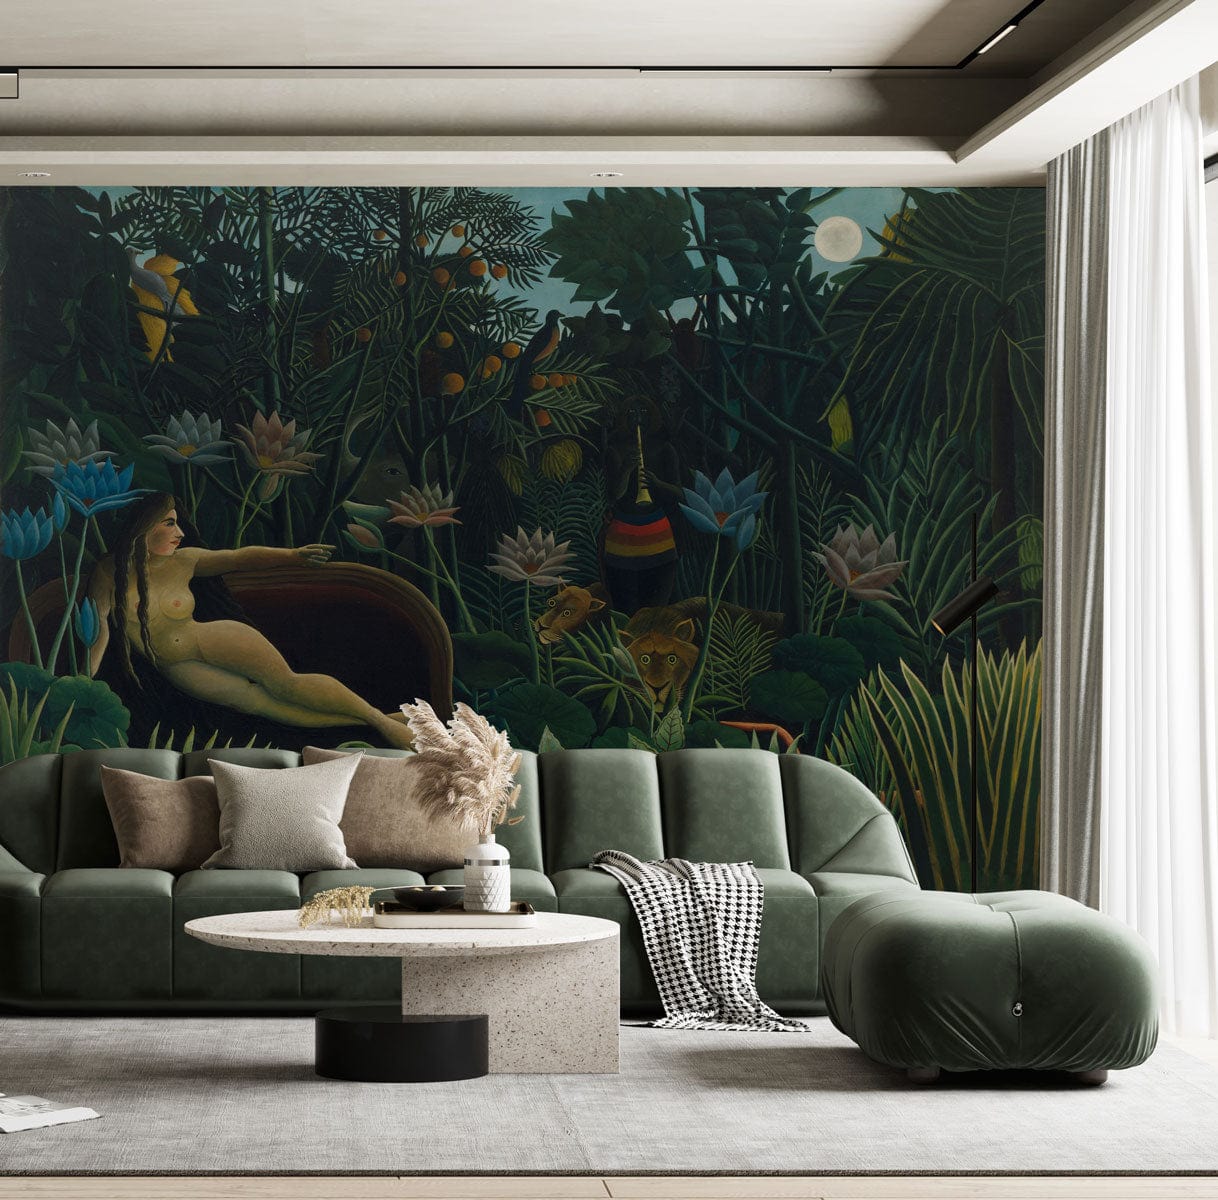 The Dream Wallpaper Mural for living room decor